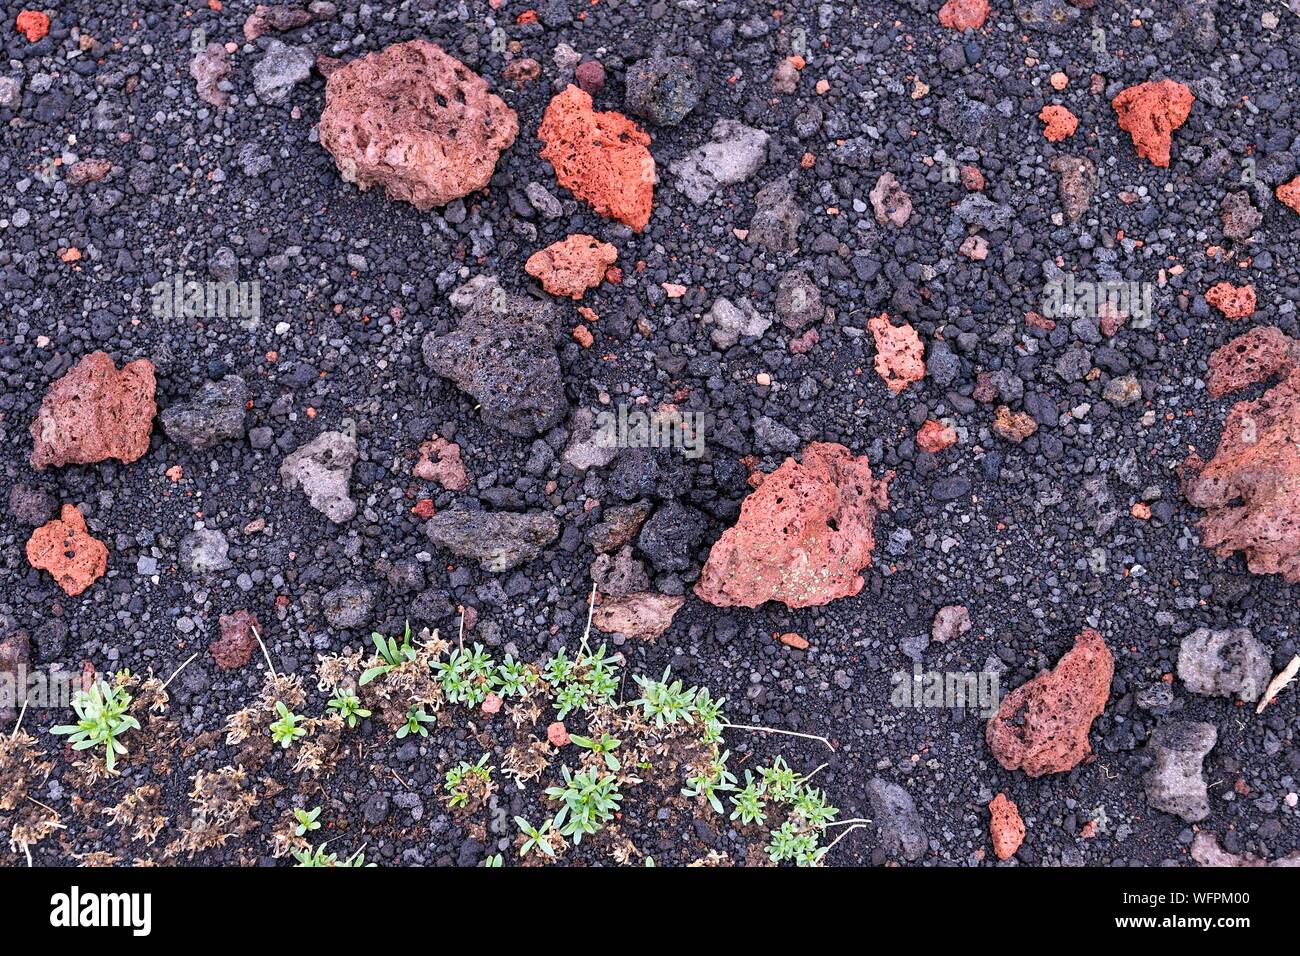 Italia, Sicilia, el Parque Natural Regional de Etna Etna, catalogada como Patrimonio de la Humanidad por la UNESCO, roca volcánica Foto de stock